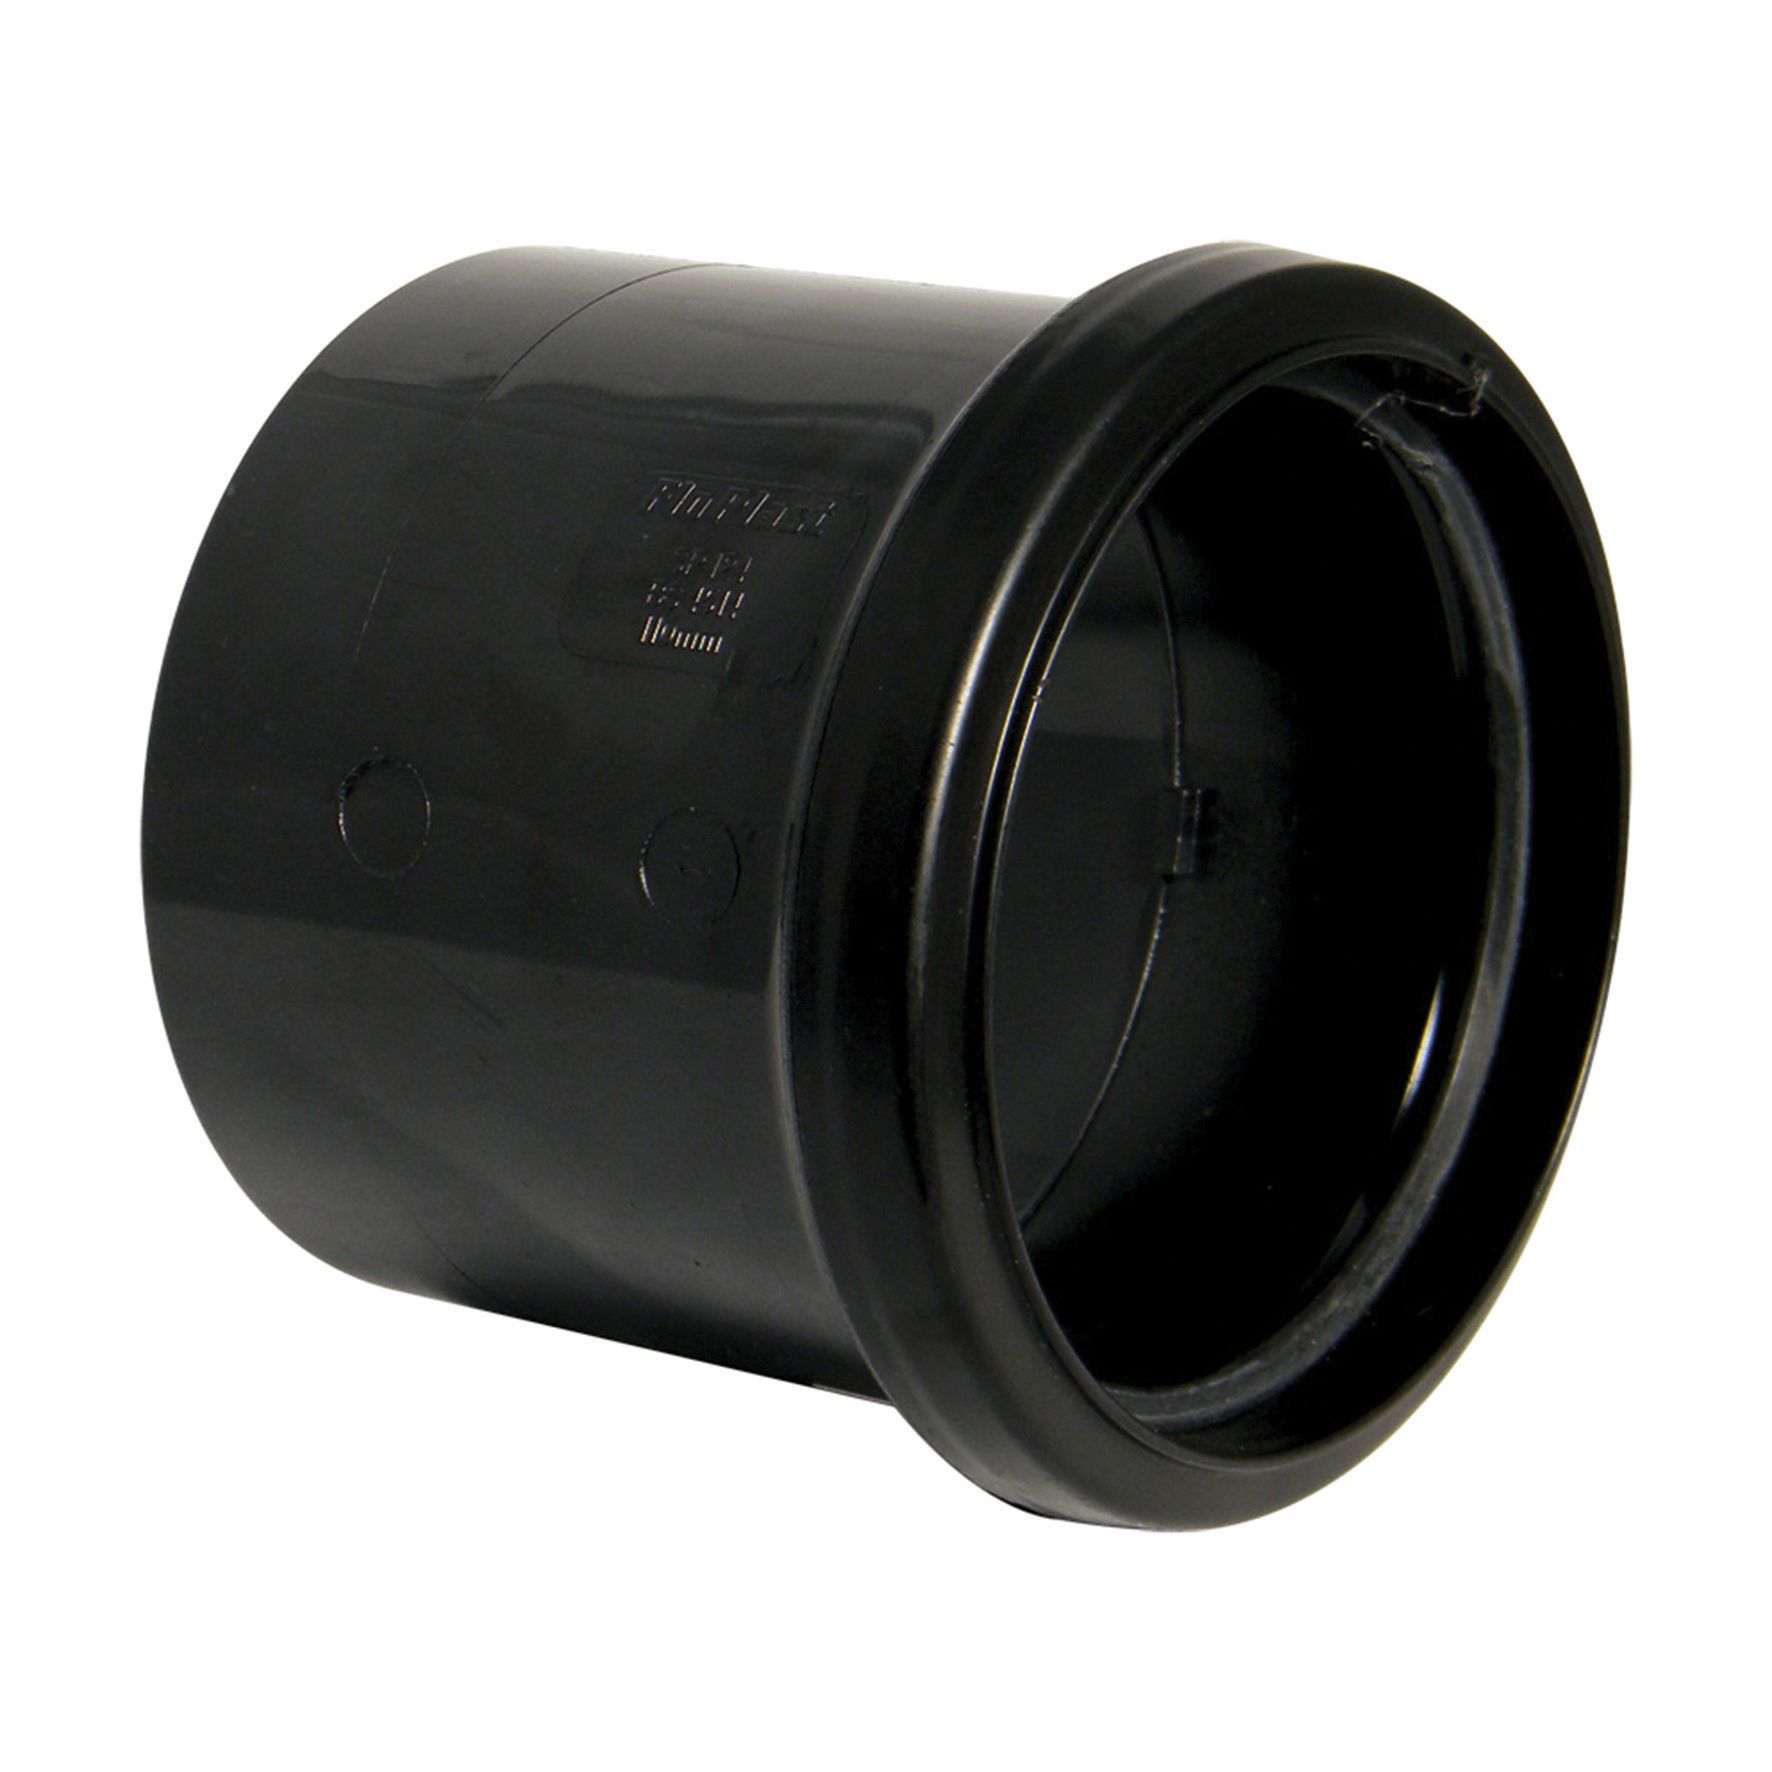 Image of FloPlast 110mm Single Socket Coupling - Black